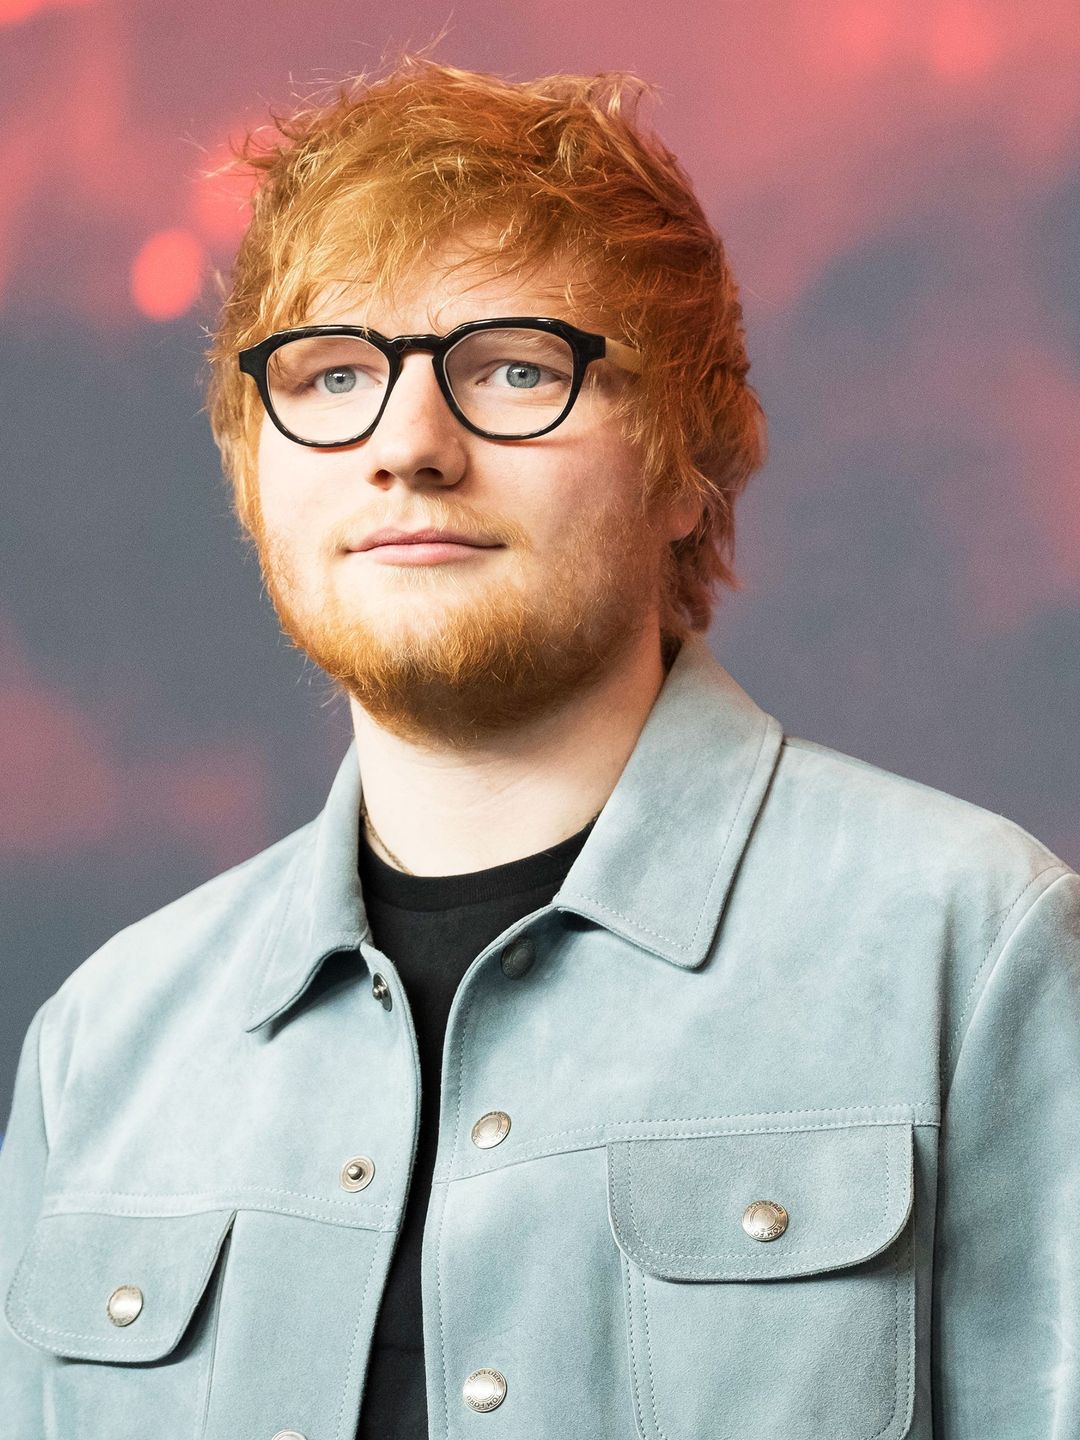 Ed Sheeran young age